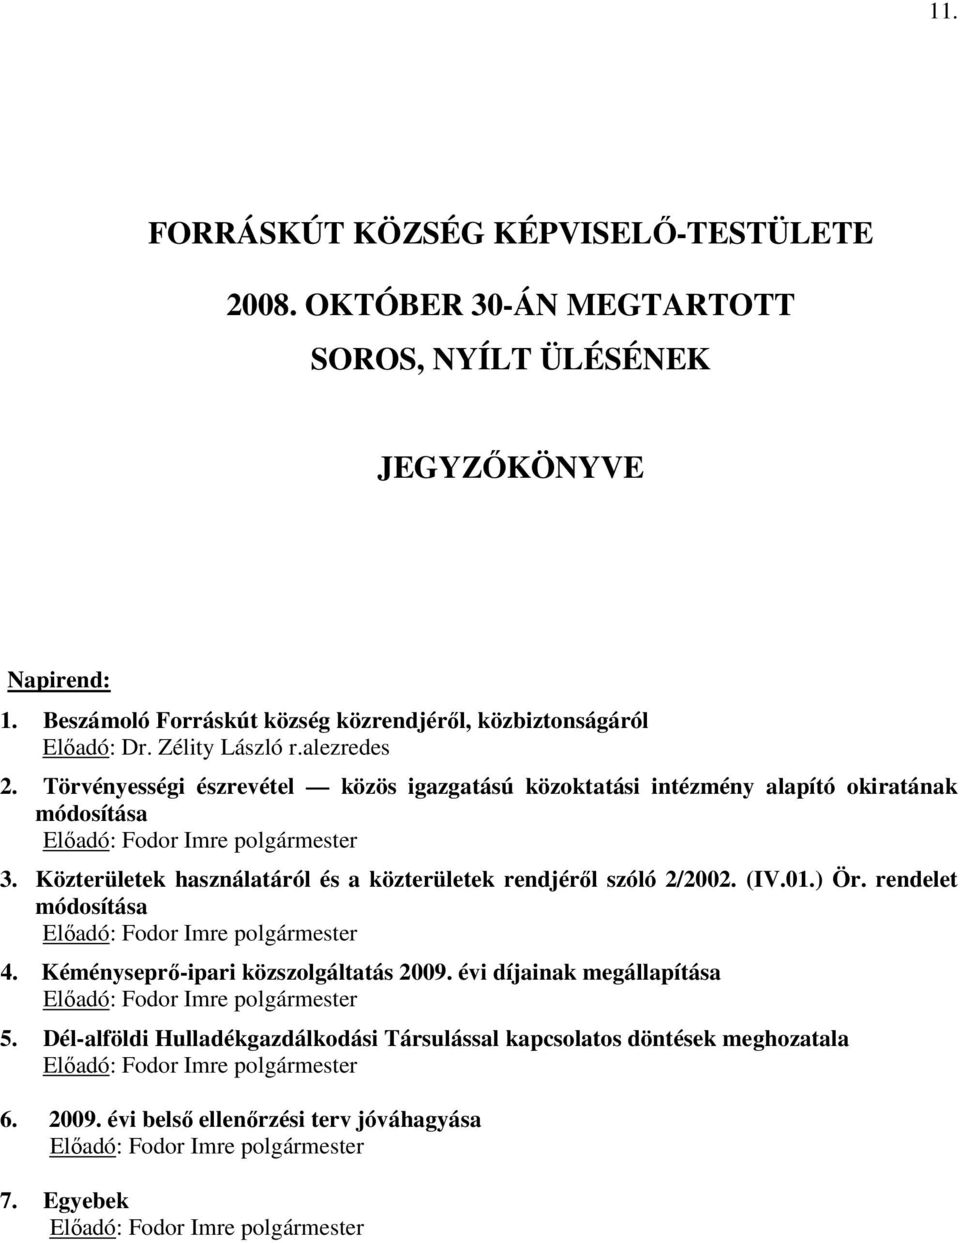 Közterületek használatáról és a közterületek rendjéről szóló 2/2002. (IV.01.) Ör. rendelet módosítása Előadó: Fodor Imre polgármester 4. Kéményseprő-ipari közszolgáltatás 2009.